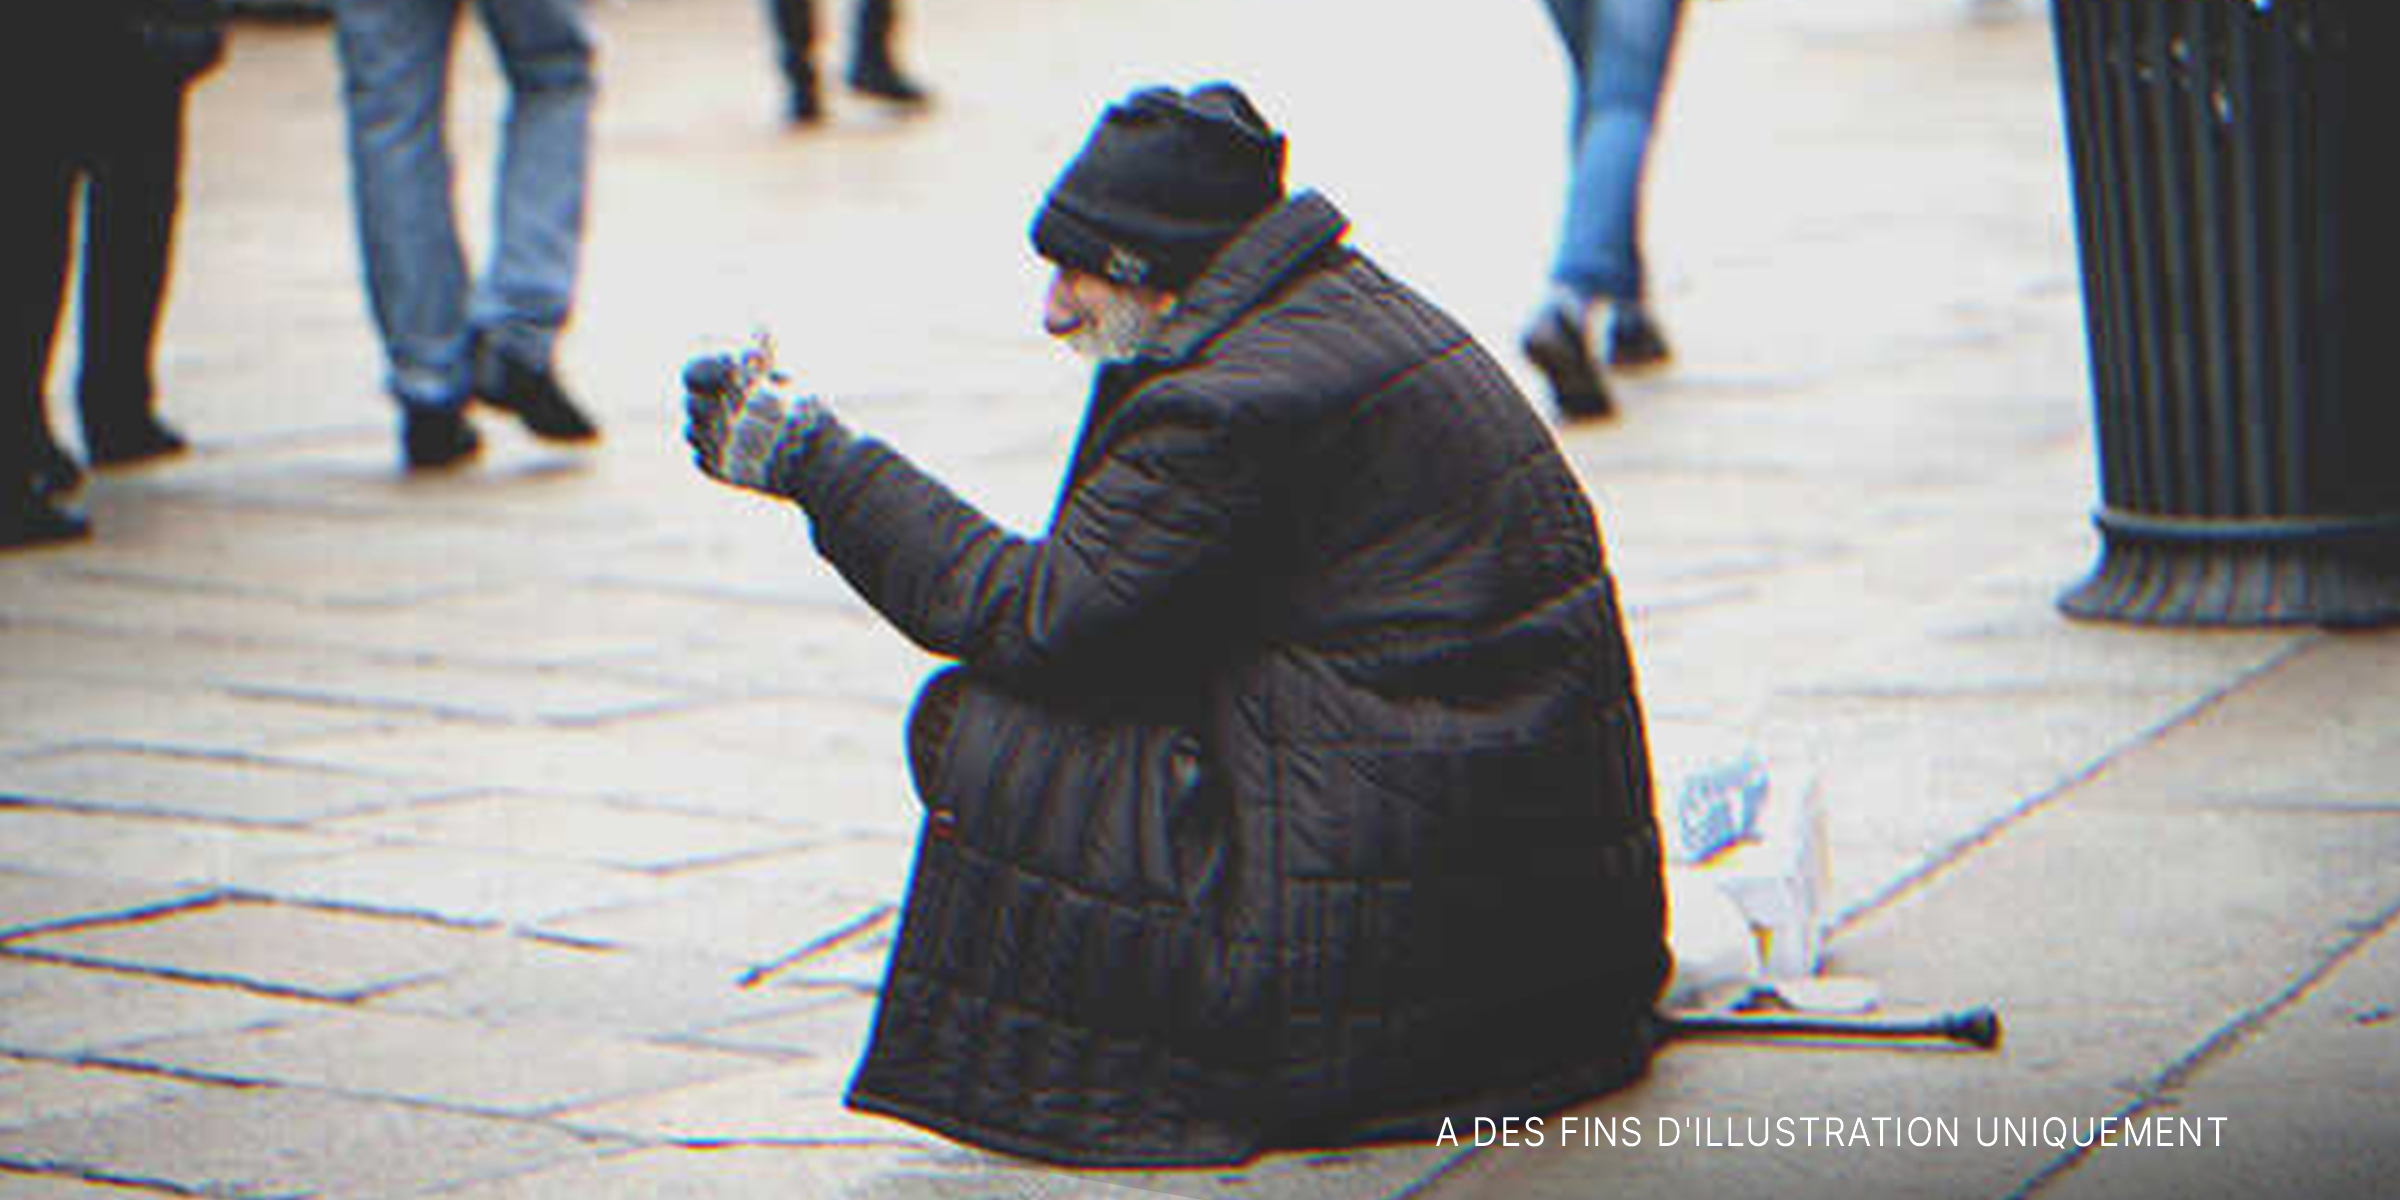 Un vieux mendiant assis dans la rue | Source : Shutterstock